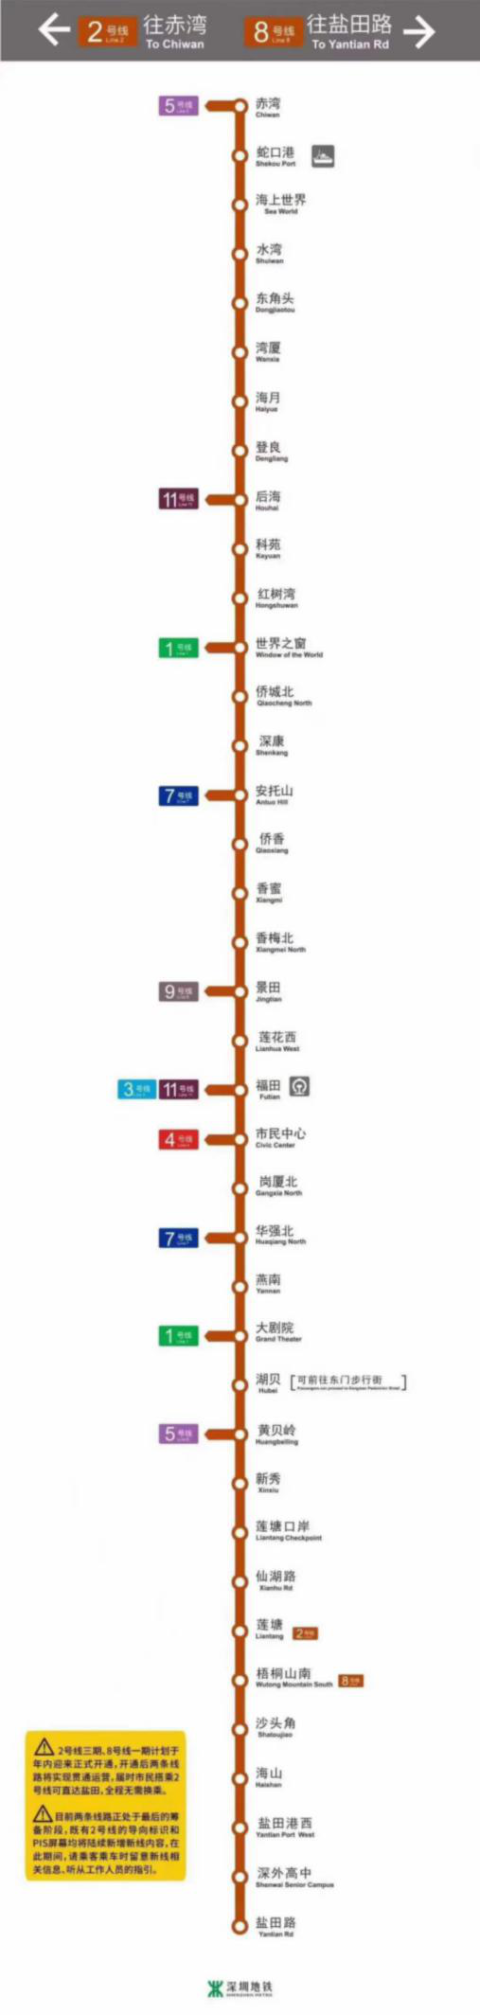 8号线开通倒计时,盐田中心海山站周边楼盘有哪些?